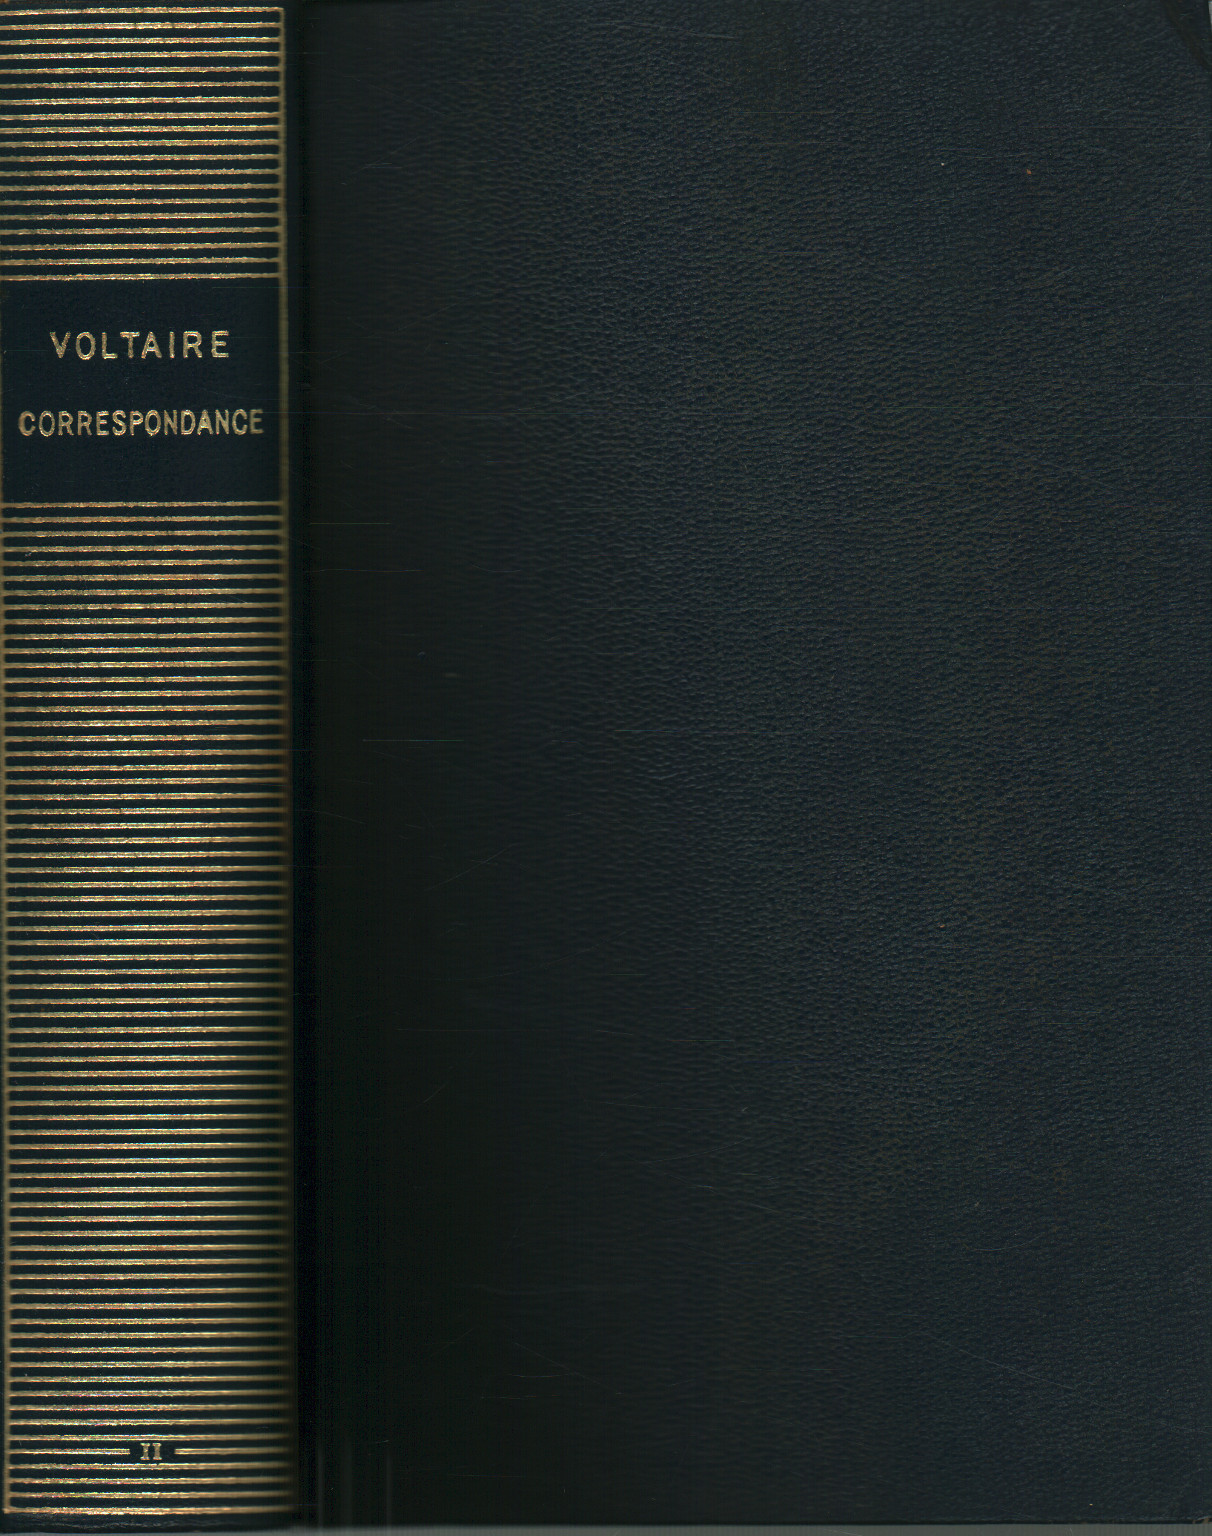 Correspondance de Voltaire (tome II), s.a.